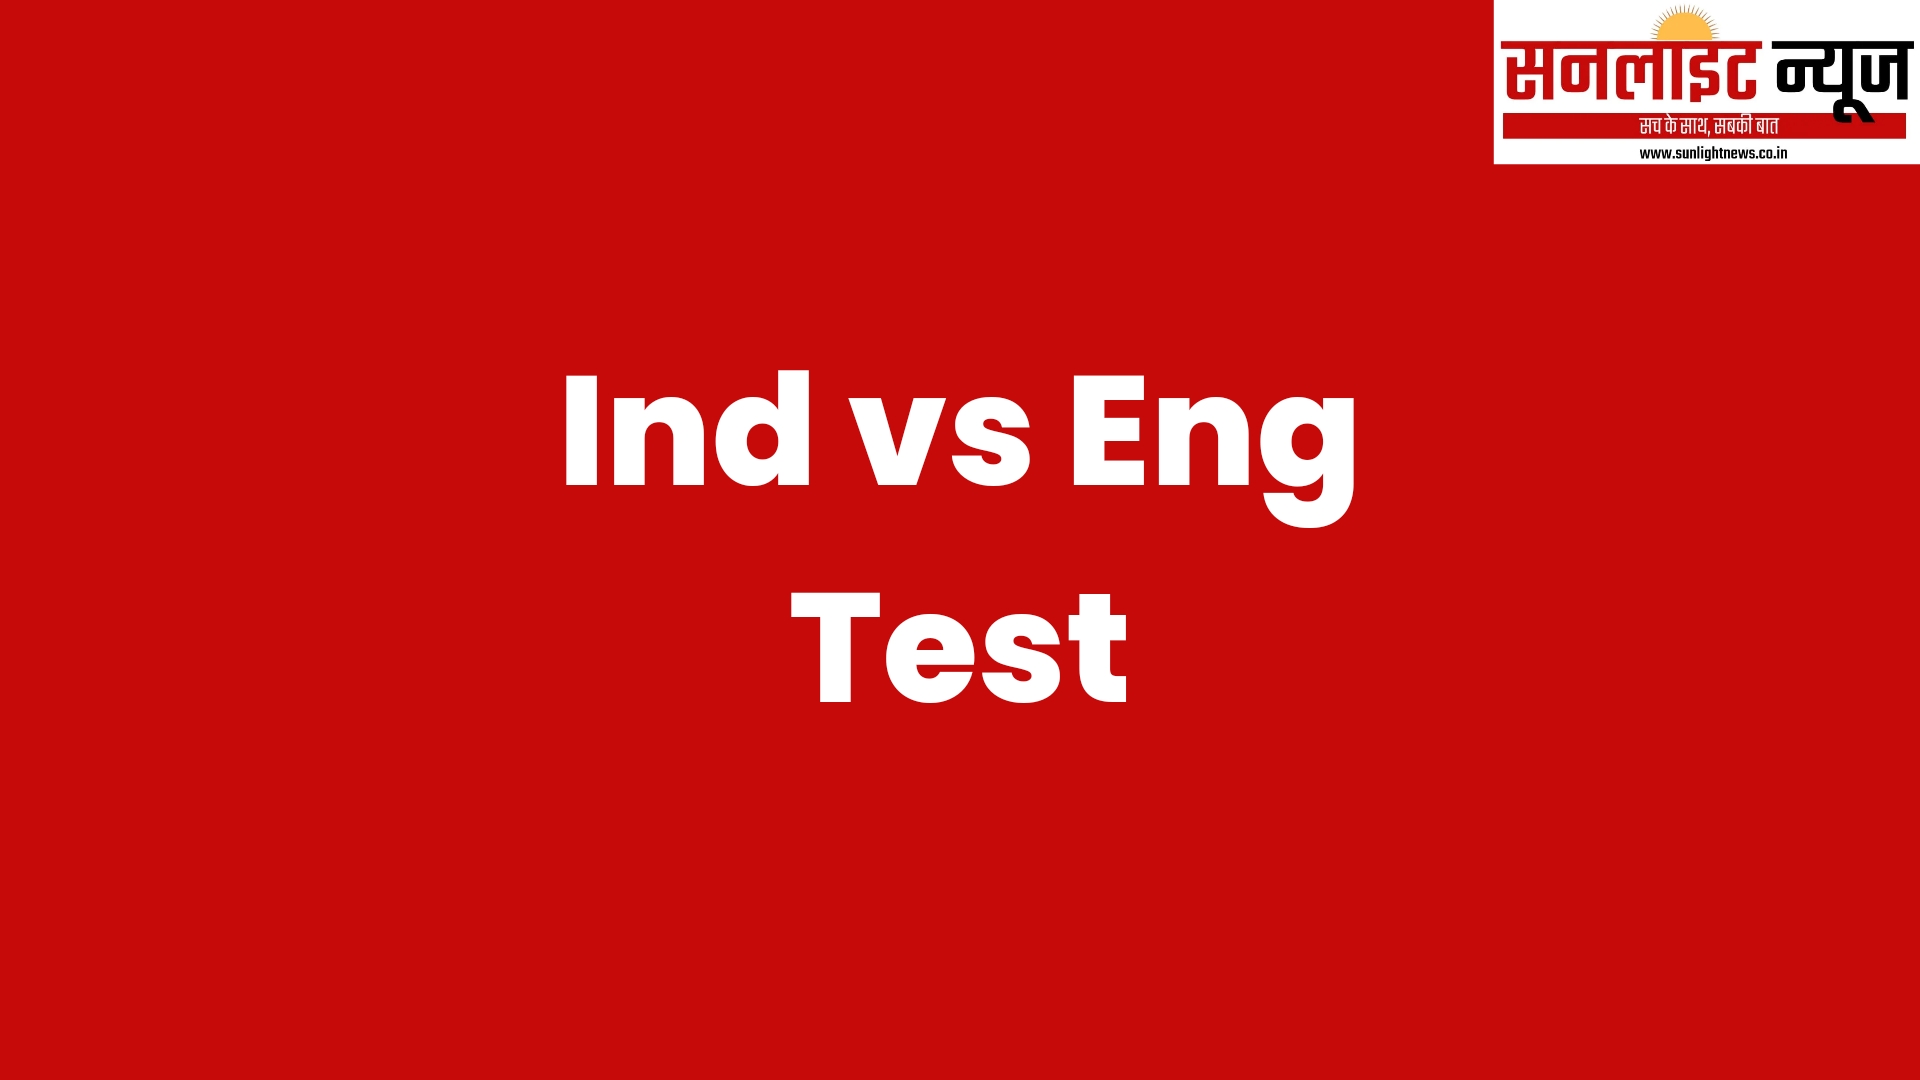 Ind vs eng test